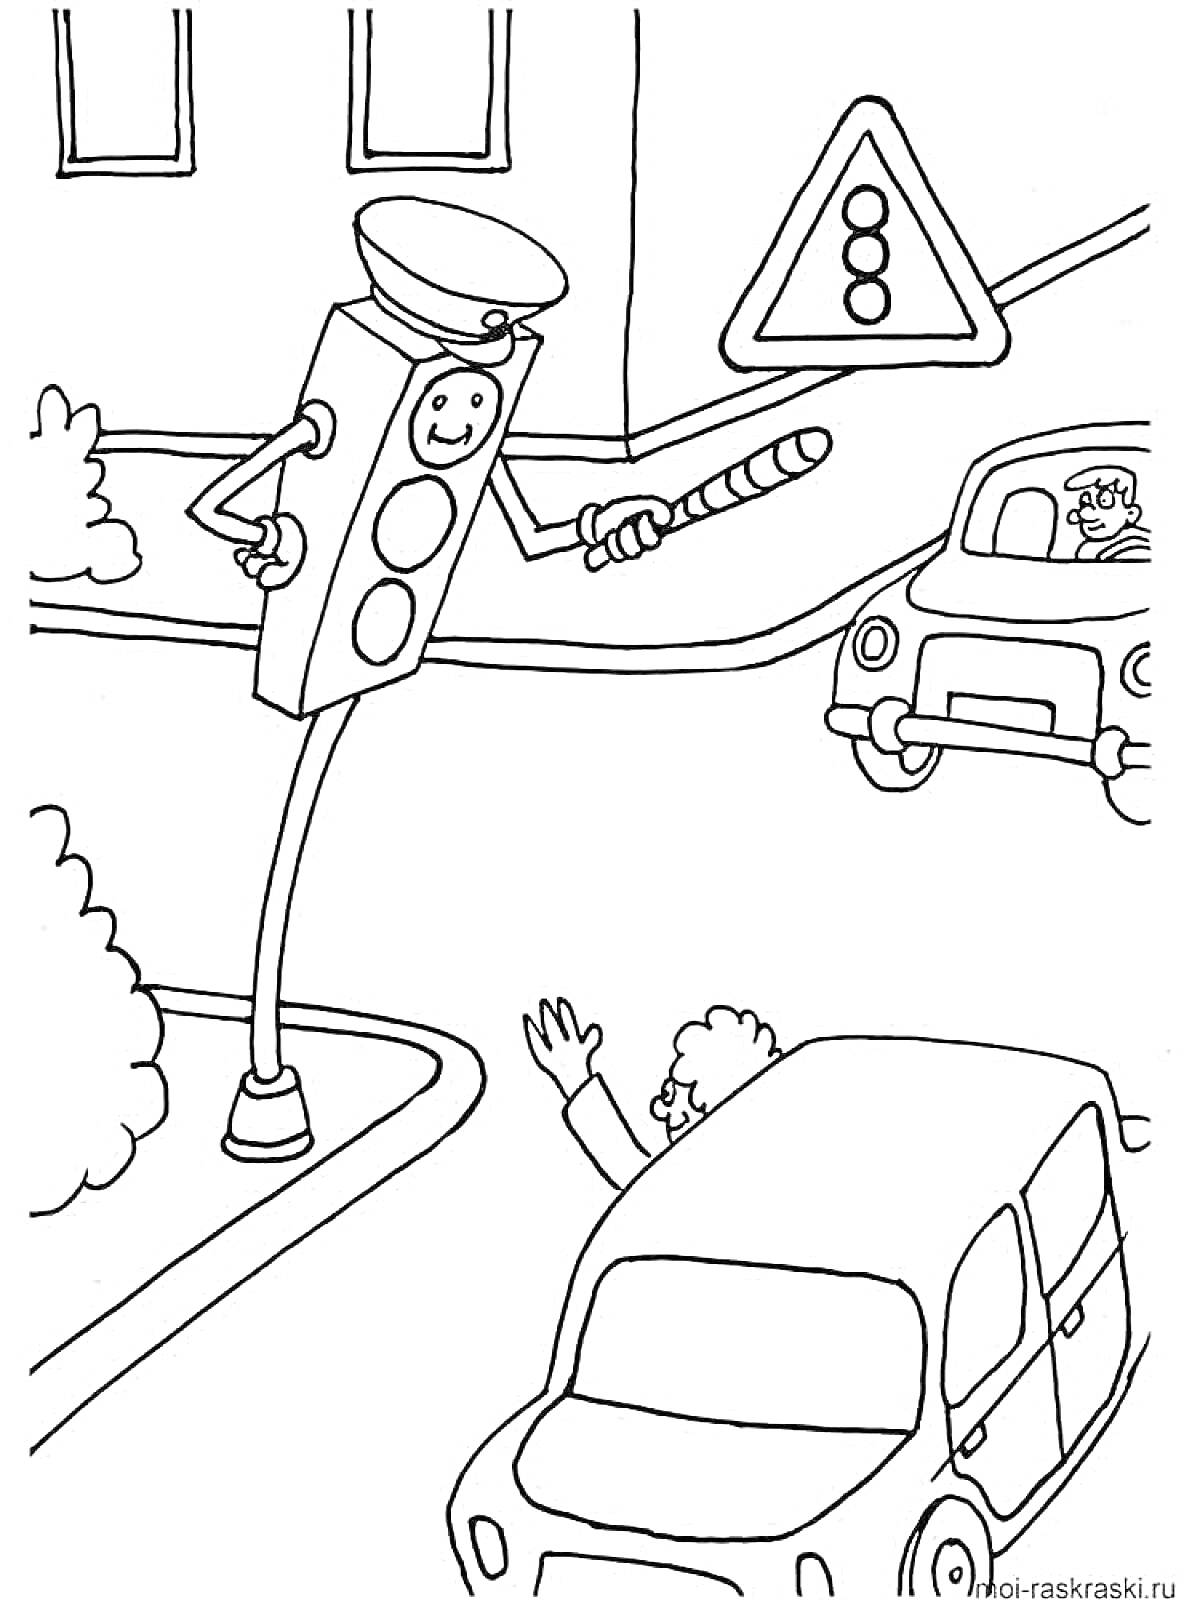 Светофор-инспектор на перекрестке. Водитель, пешеход и дорожный знак.